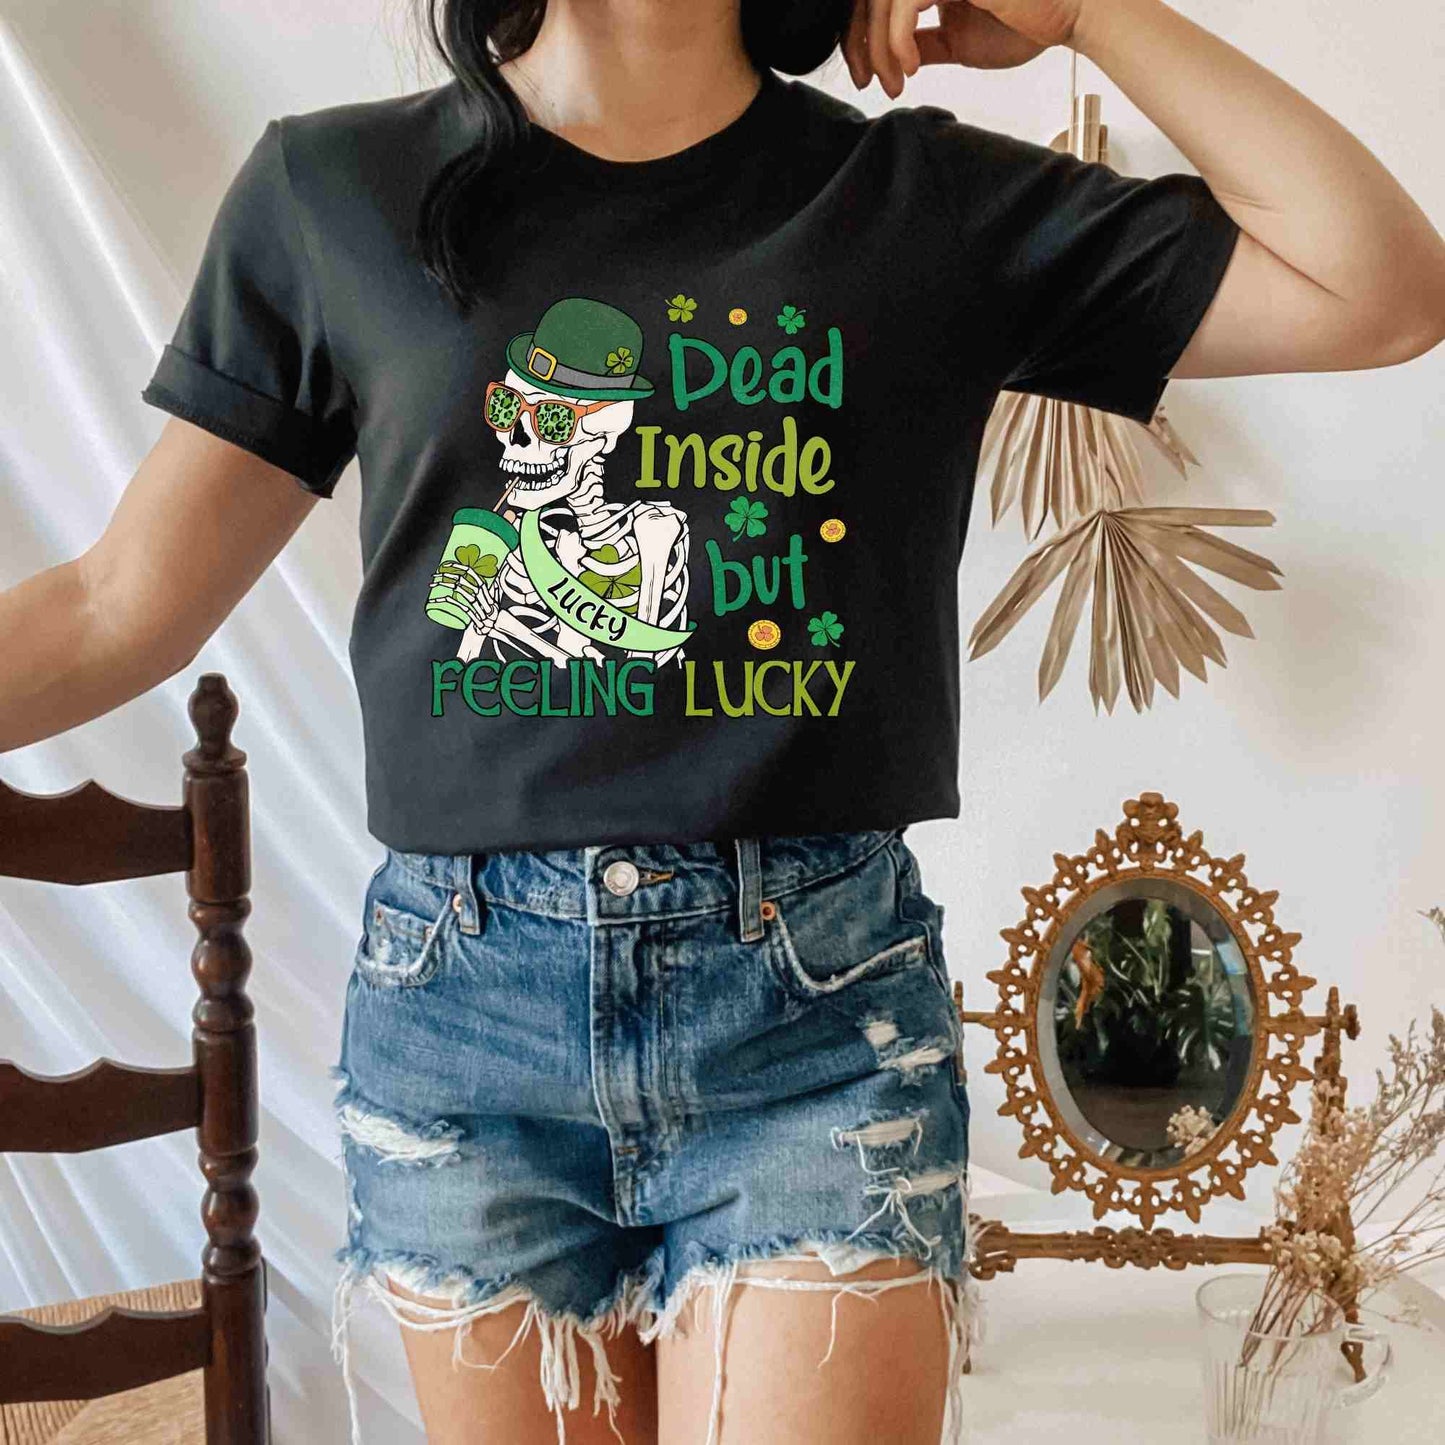 Dead Inside but Feeling Lucky St. Patrick's Day Shirt for Women or Men, Shamrock Clover Sweatshirt